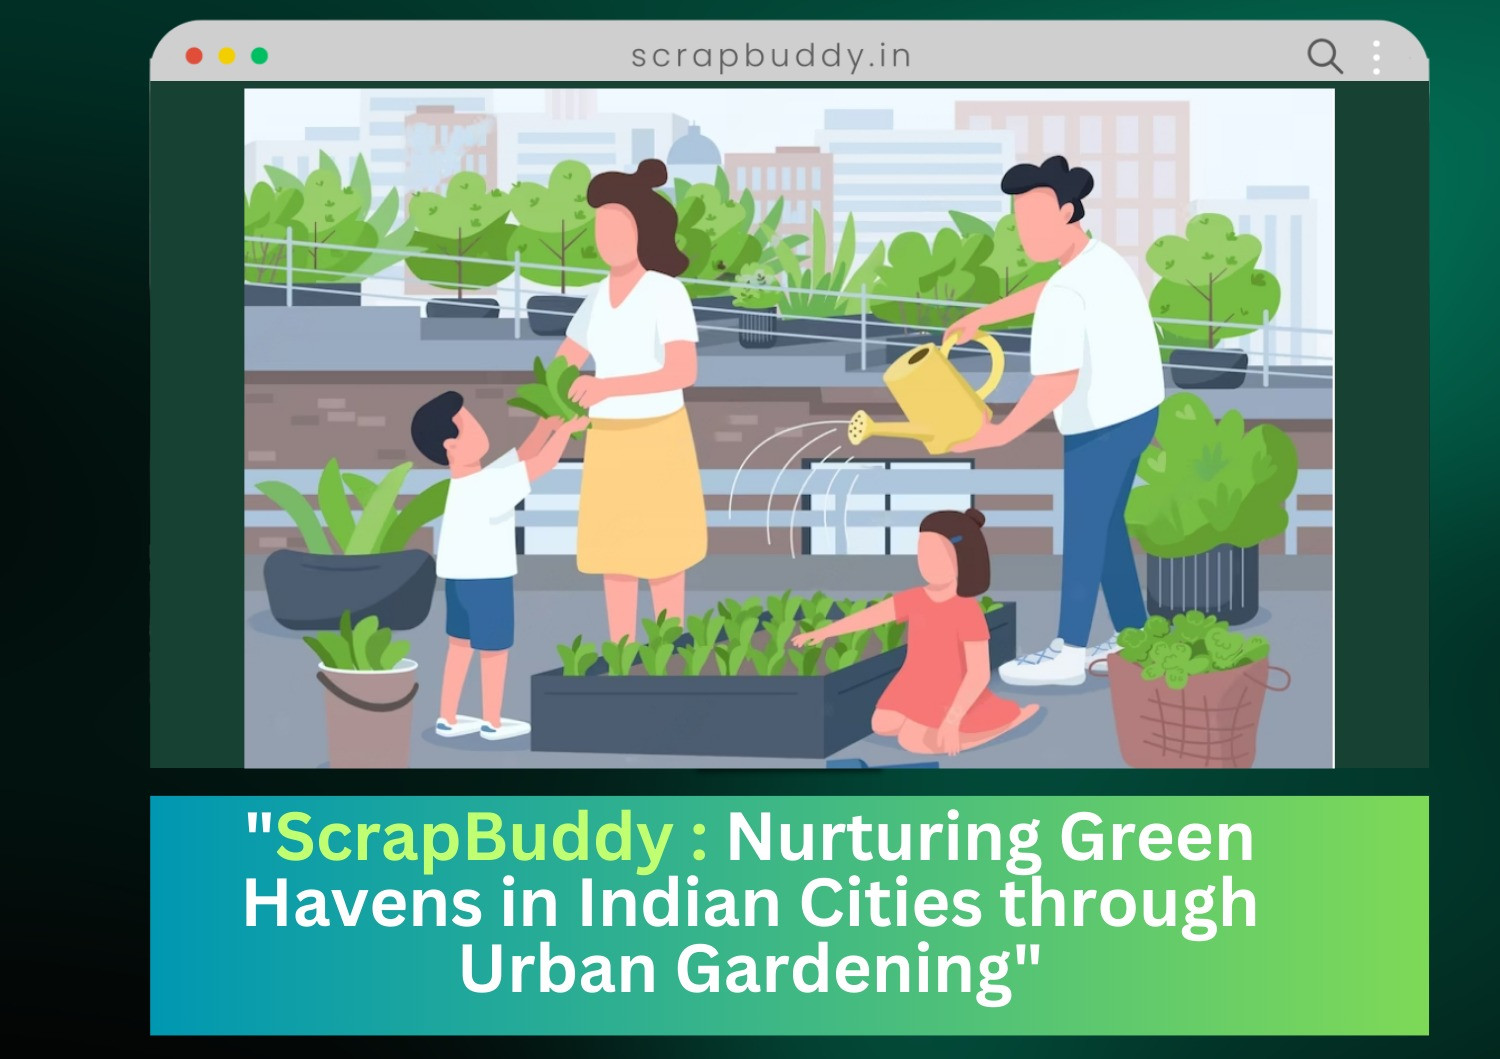 "ScrapBuddy: Nurturing Green Havens in Indian Cities through Urban Gardening"